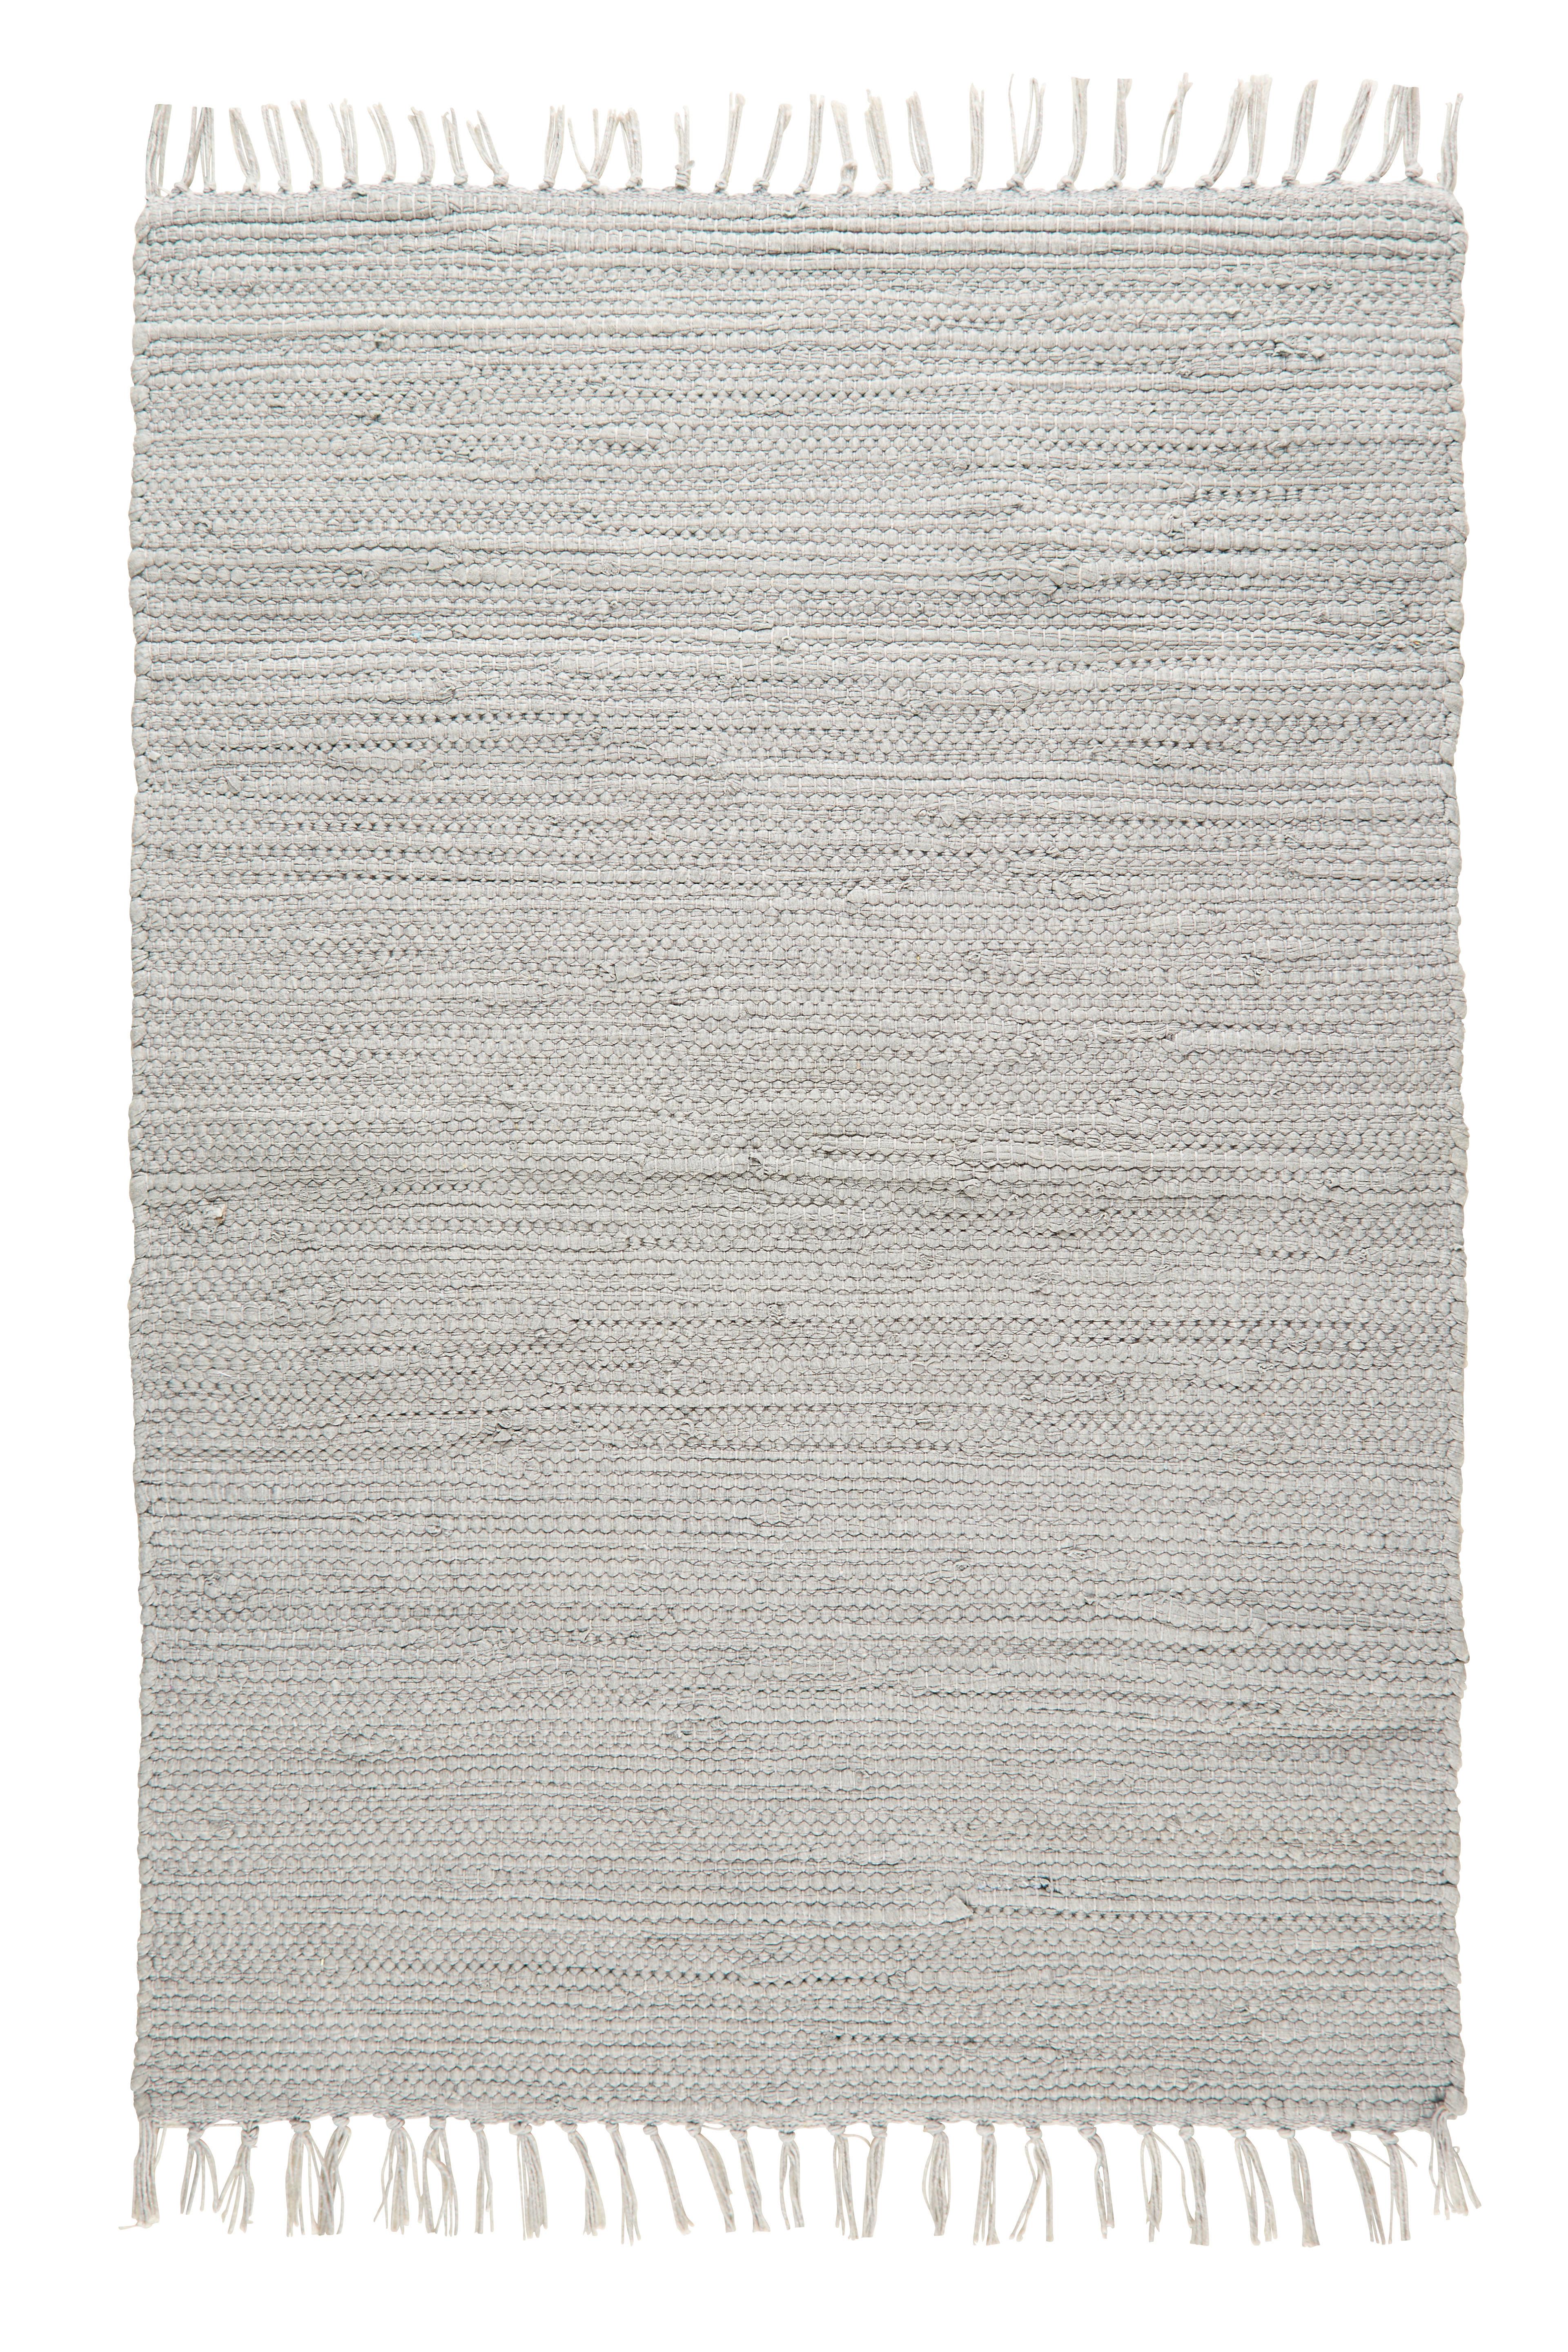 Preproga Iz Krp Julia 2 - siva, Romantika, tekstil (70/130cm) - Modern Living